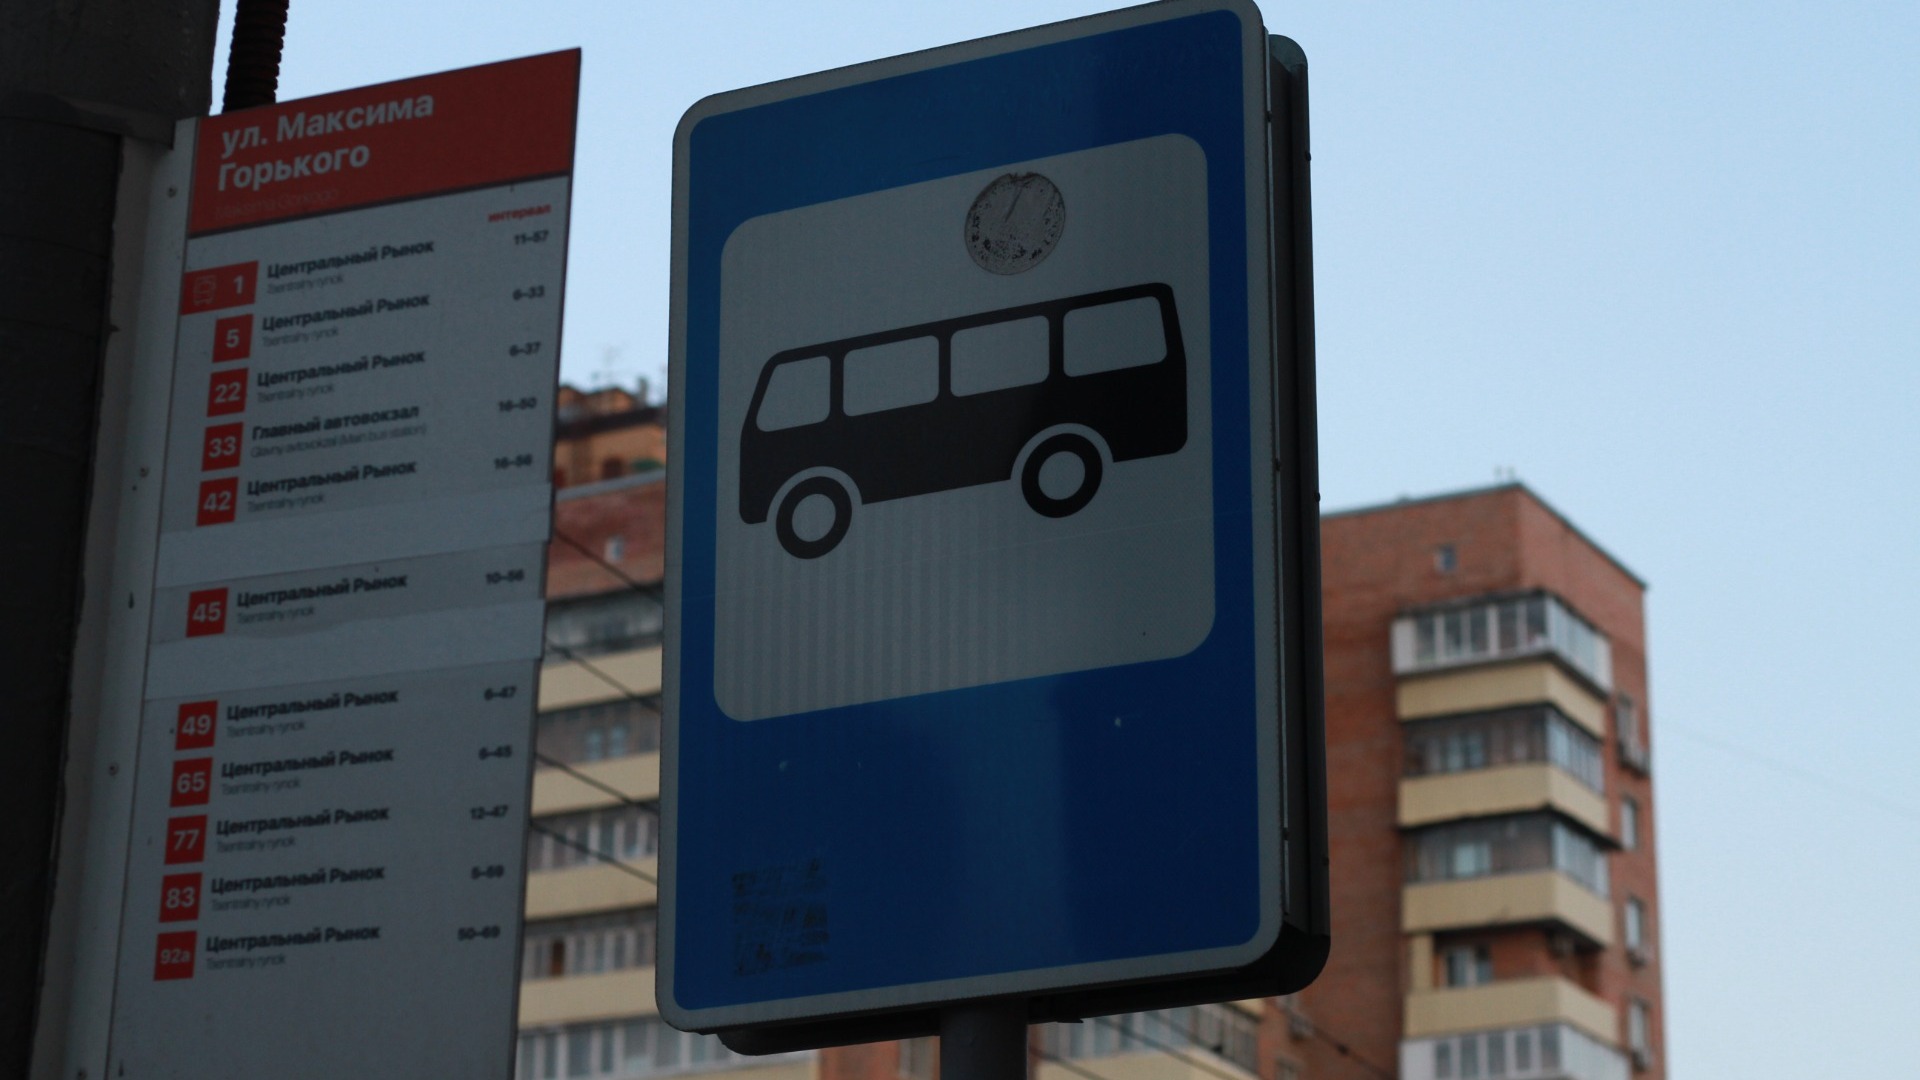 Названо расписание автобусов Петрозаводска, которые будут работать по новому тарифу